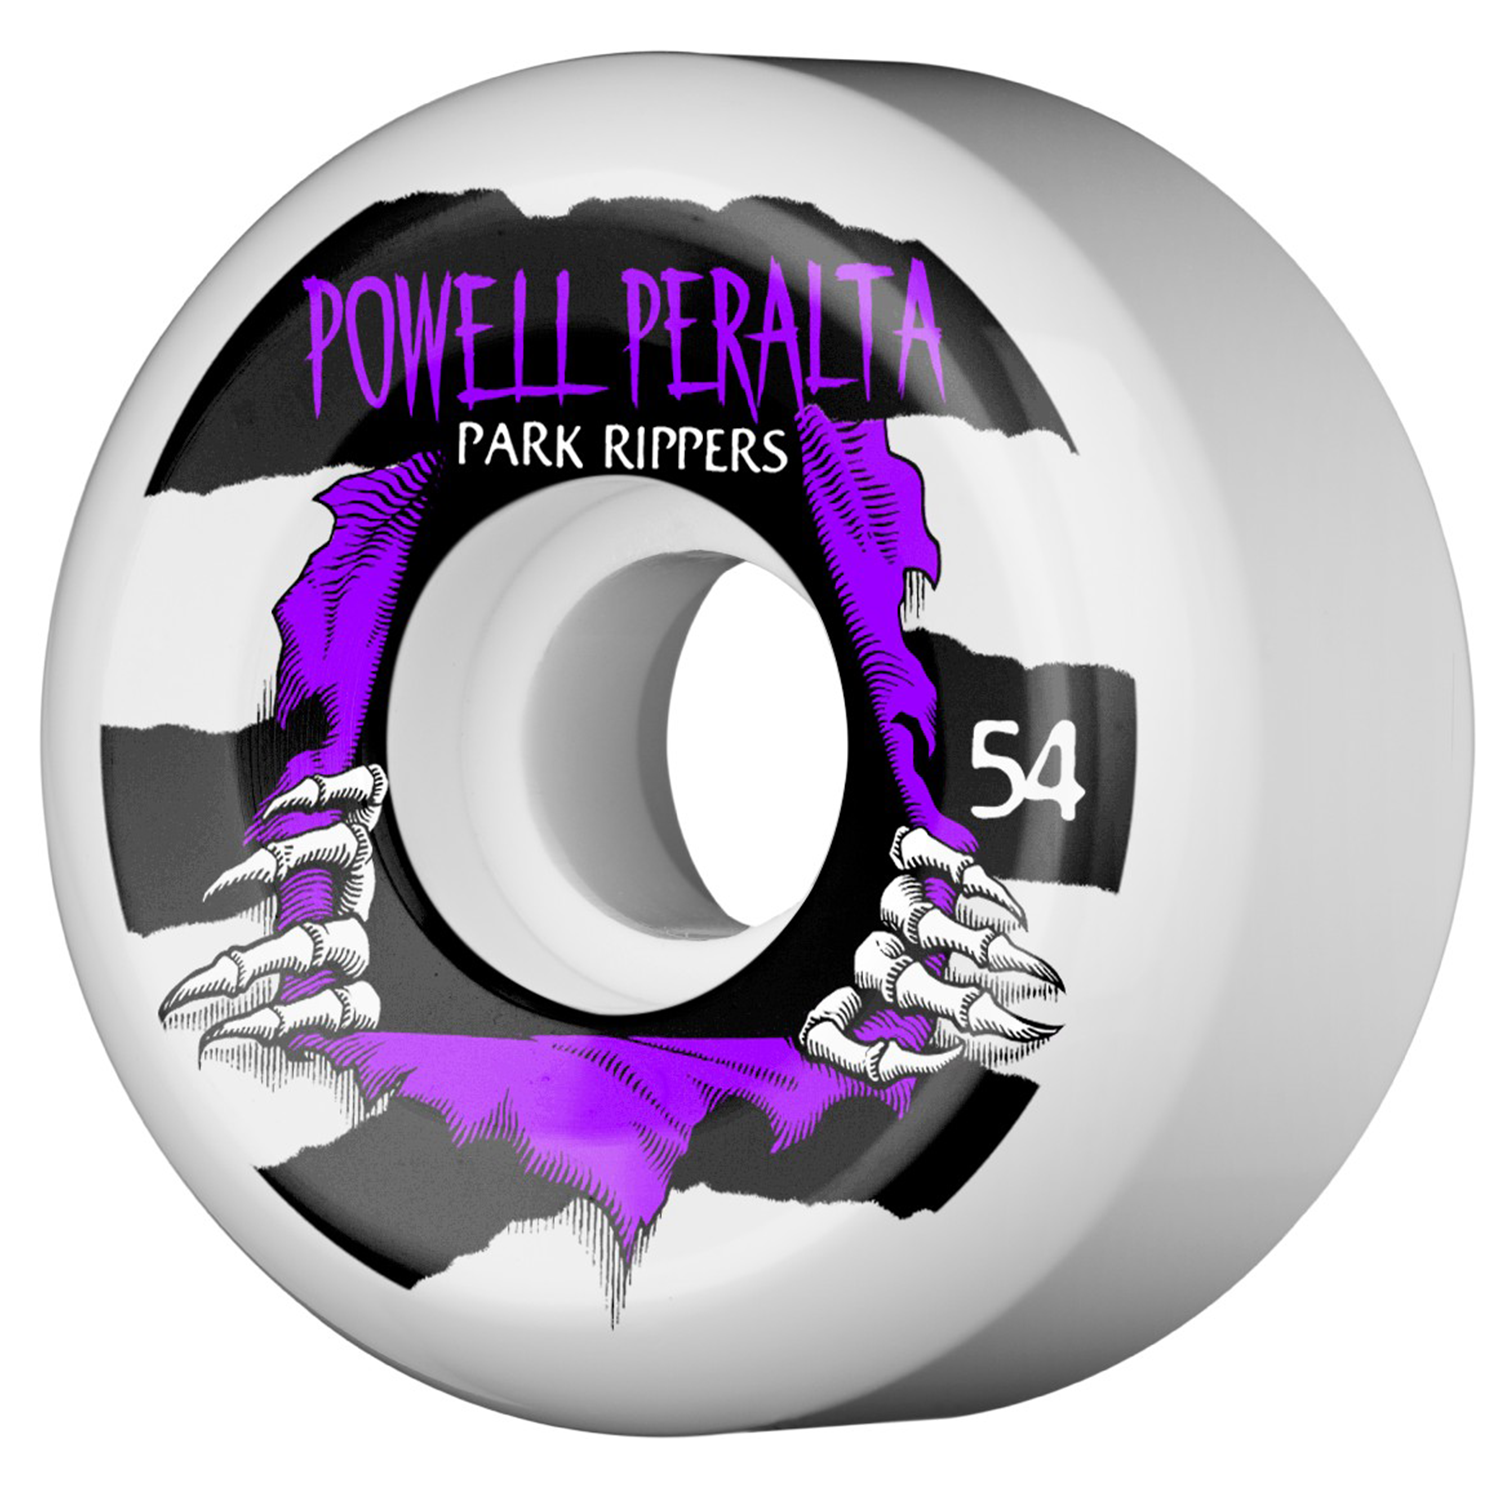 Llantas Powell Peralta Park Rippers 54mm